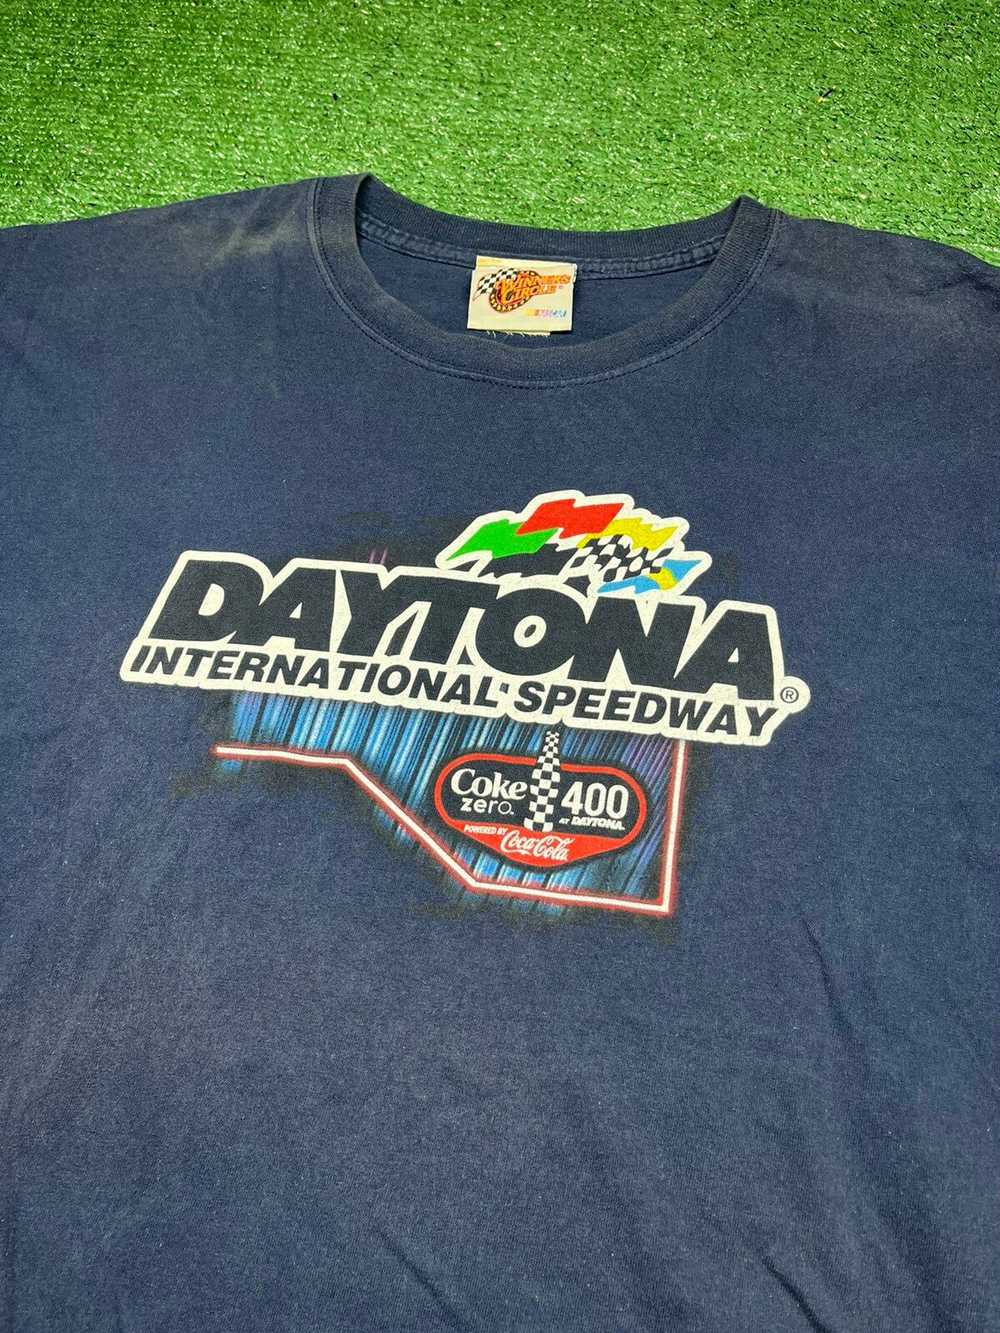 NASCAR Vintage NASCAR T-shirt - image 2